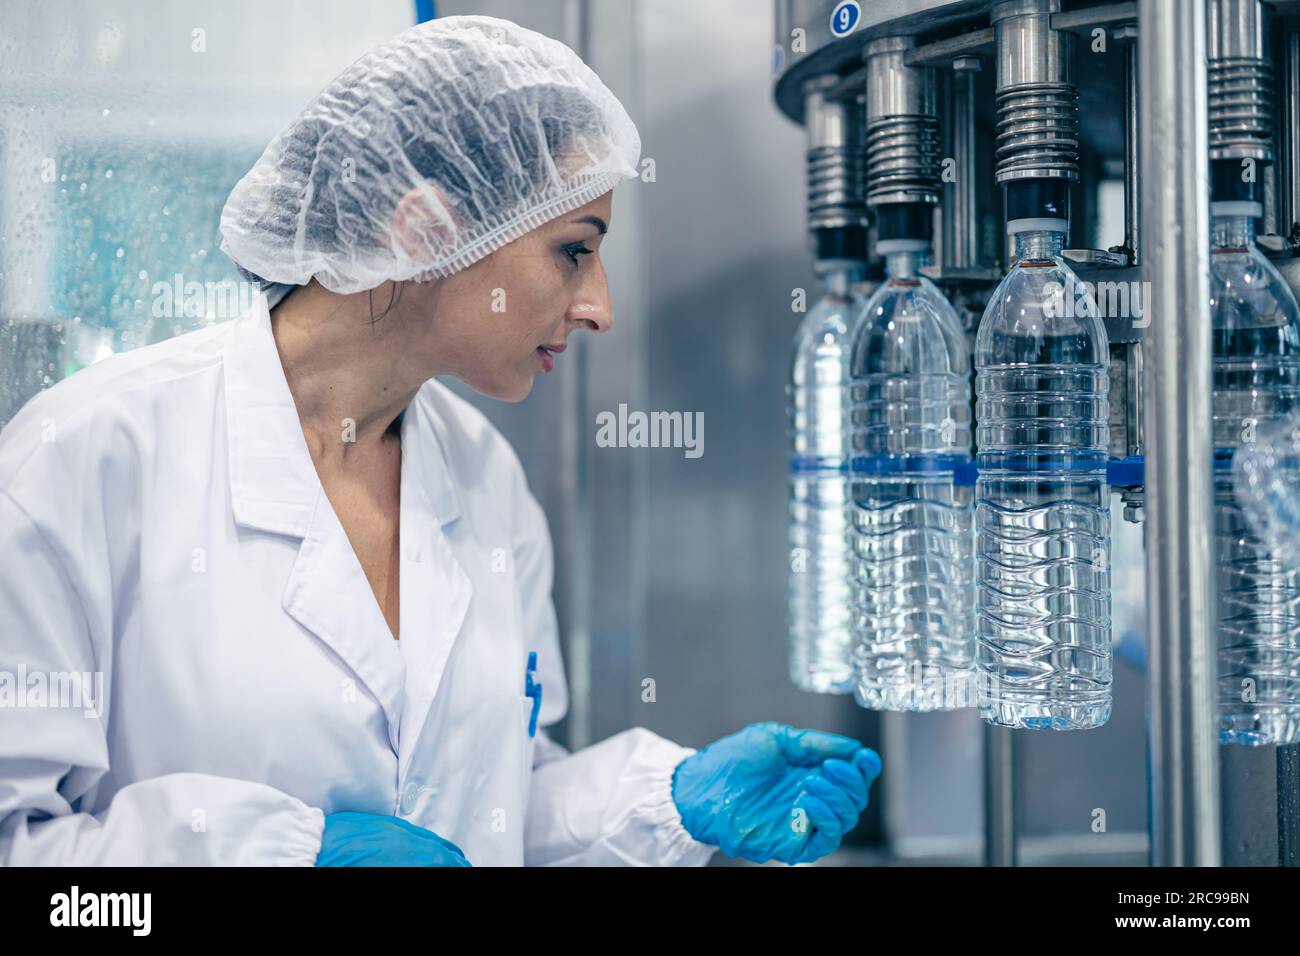 Arbeiter in der Trinkwasserfabrik. Weibliche Arbeiterinnen in der Getränkeproduktion Saubere Förderbänder Mineralwasserherstellung. Stockfoto